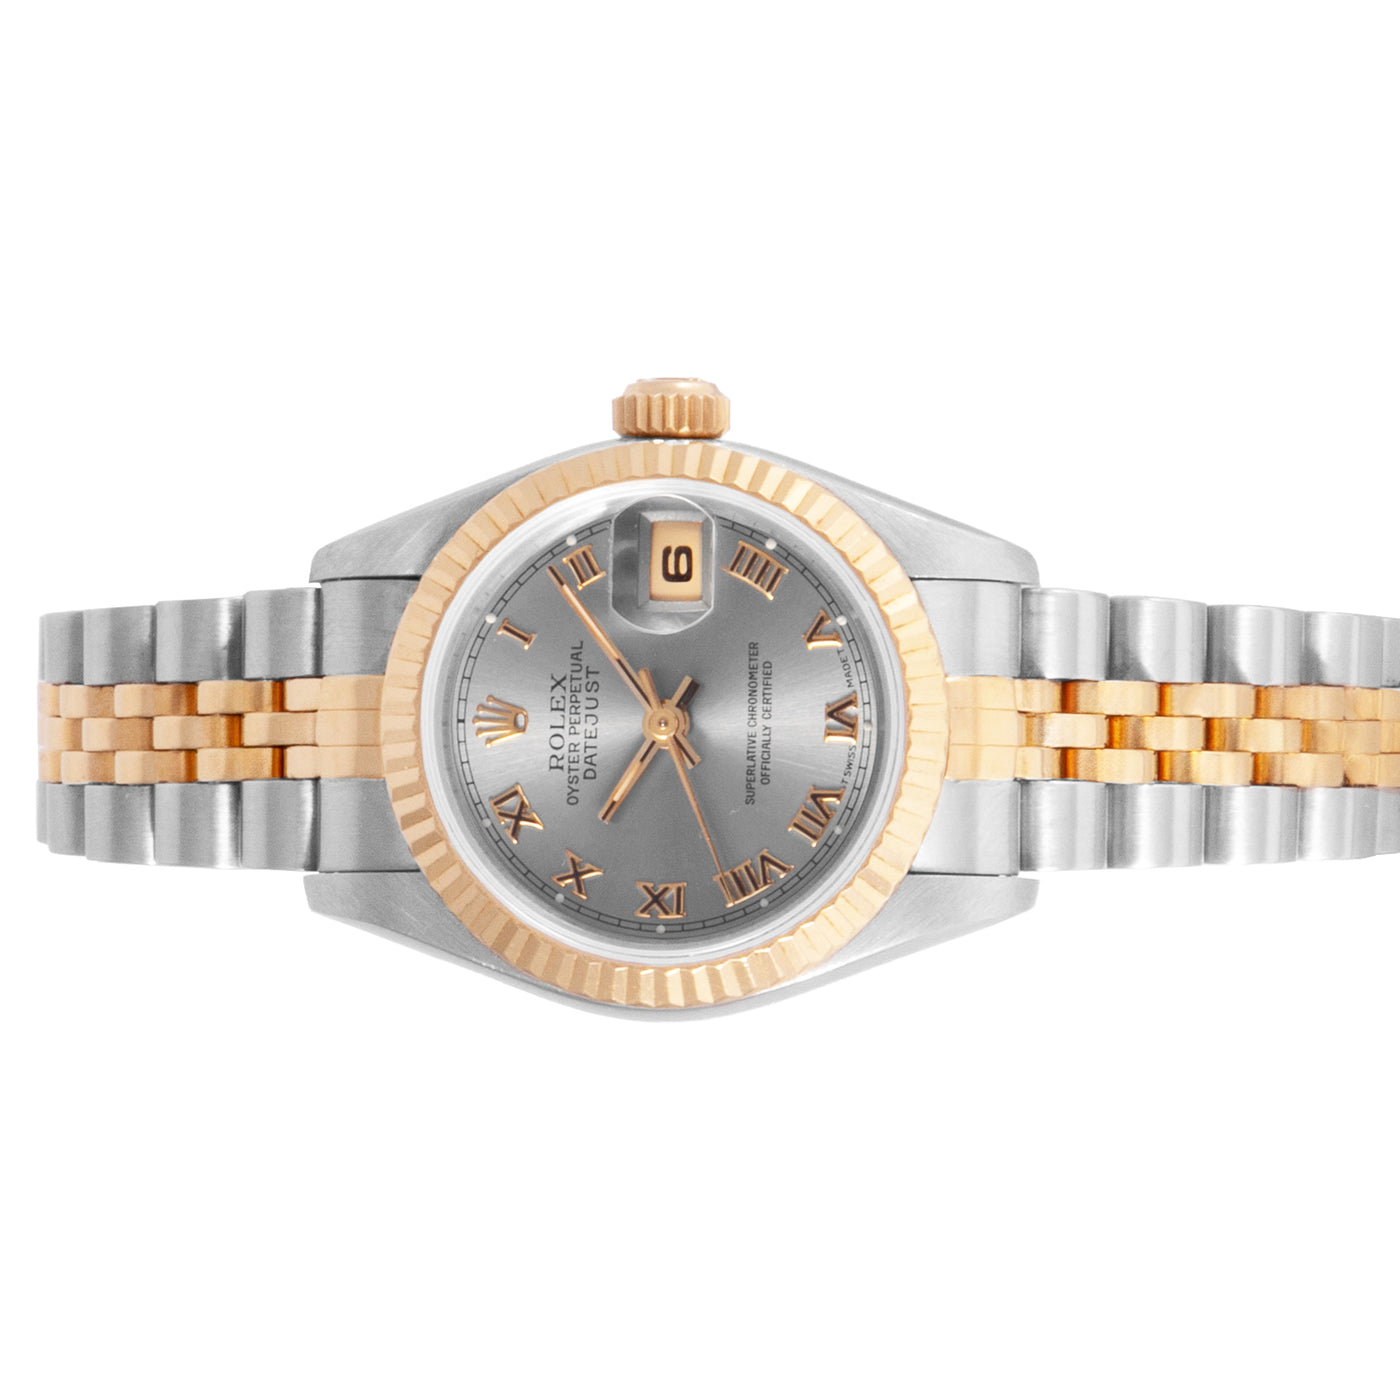 Rolex Lady-Datejust 26 69173 | Timepiece360